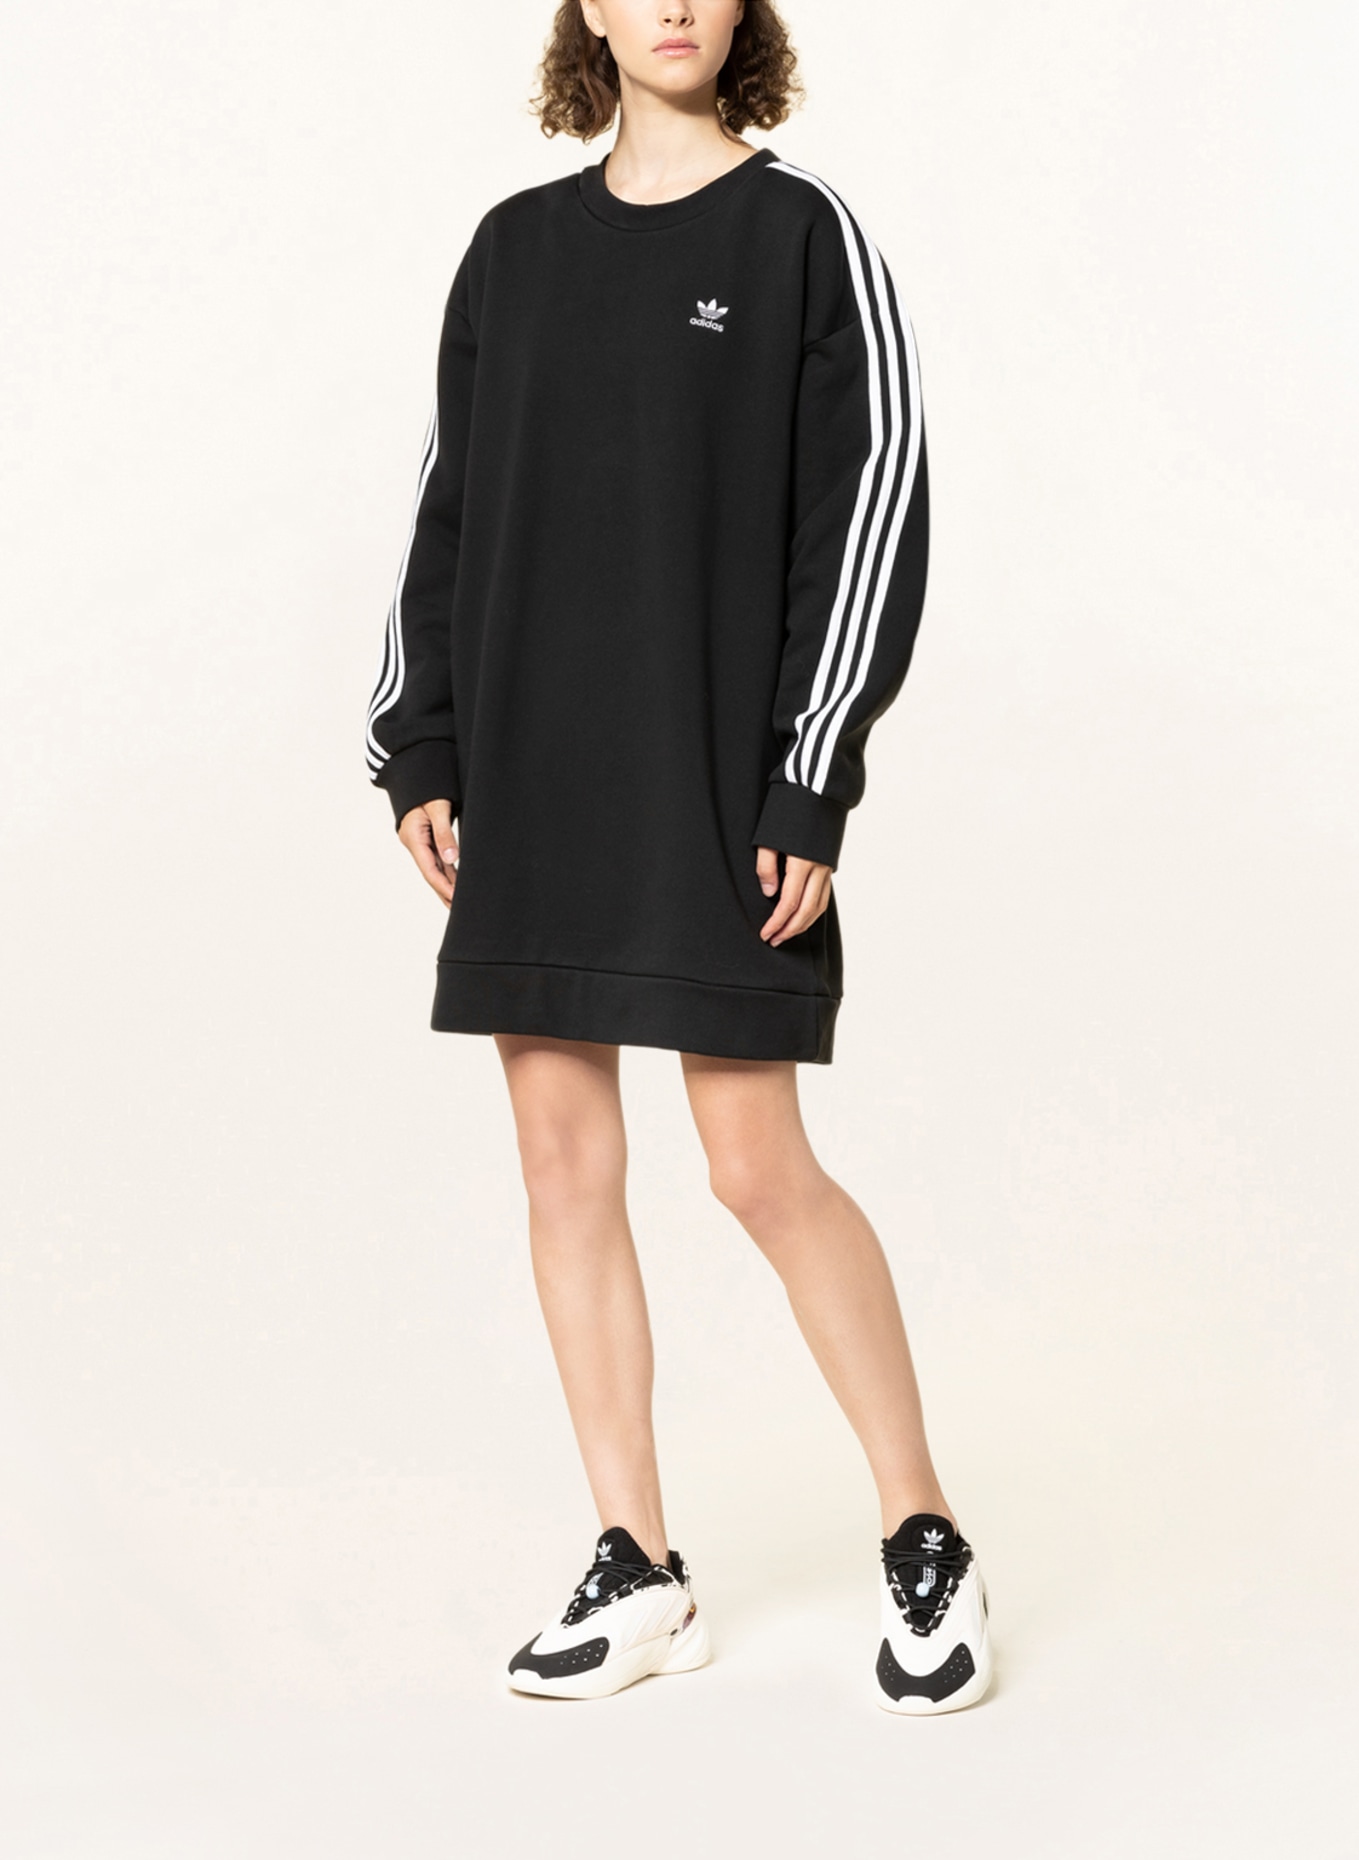 adidas Originals Sweater dress ADICOLOR black CLASSICS in